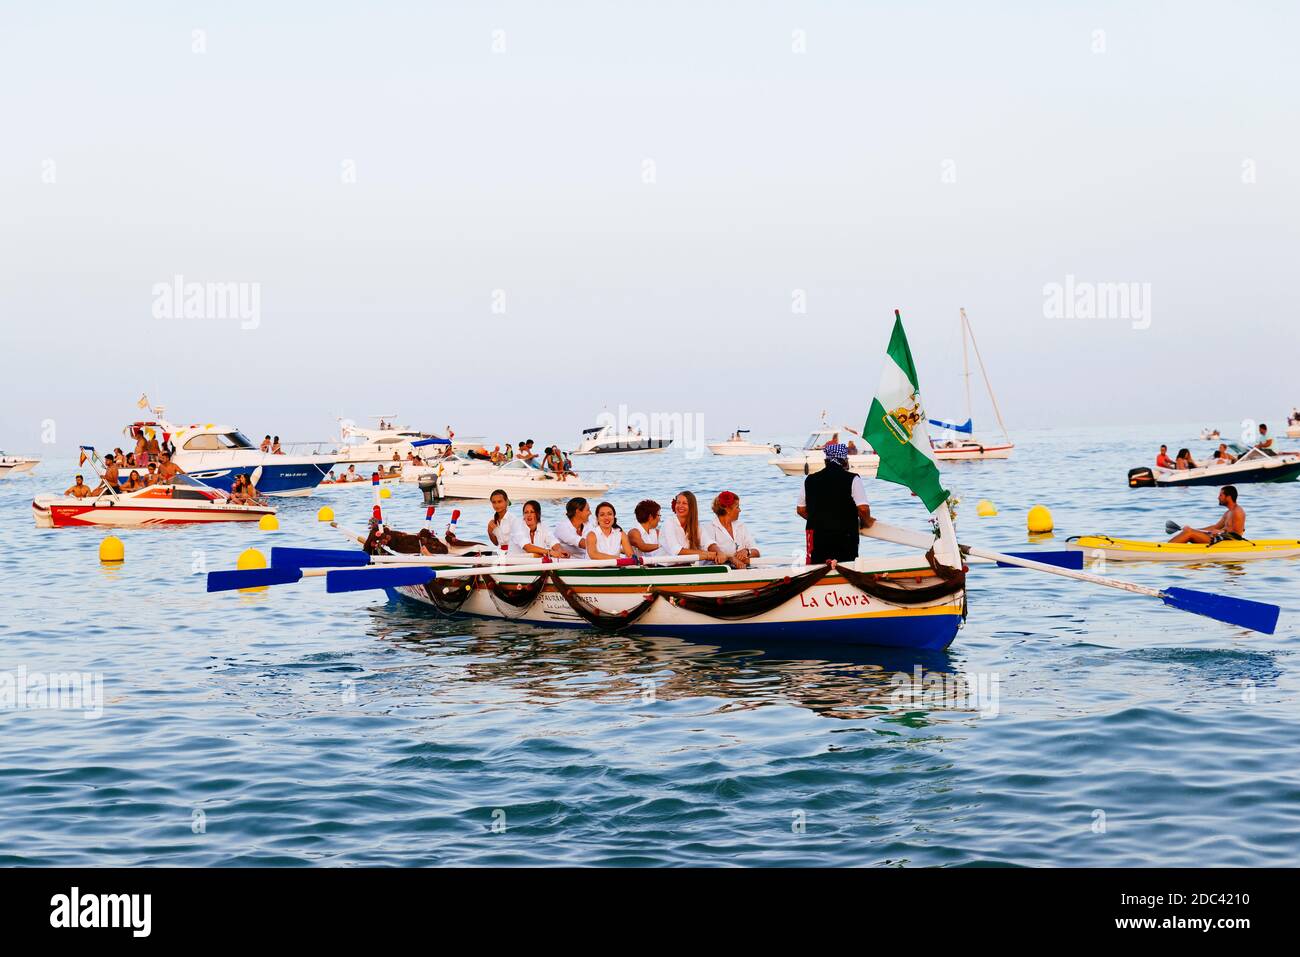 Tradizionale processione nautica della Virgen del Carmen, santa dei marinai, con i pescatori sulla spiaggia di la Carihuela. Torremolinos, Málaga, Costa de Sol Foto Stock